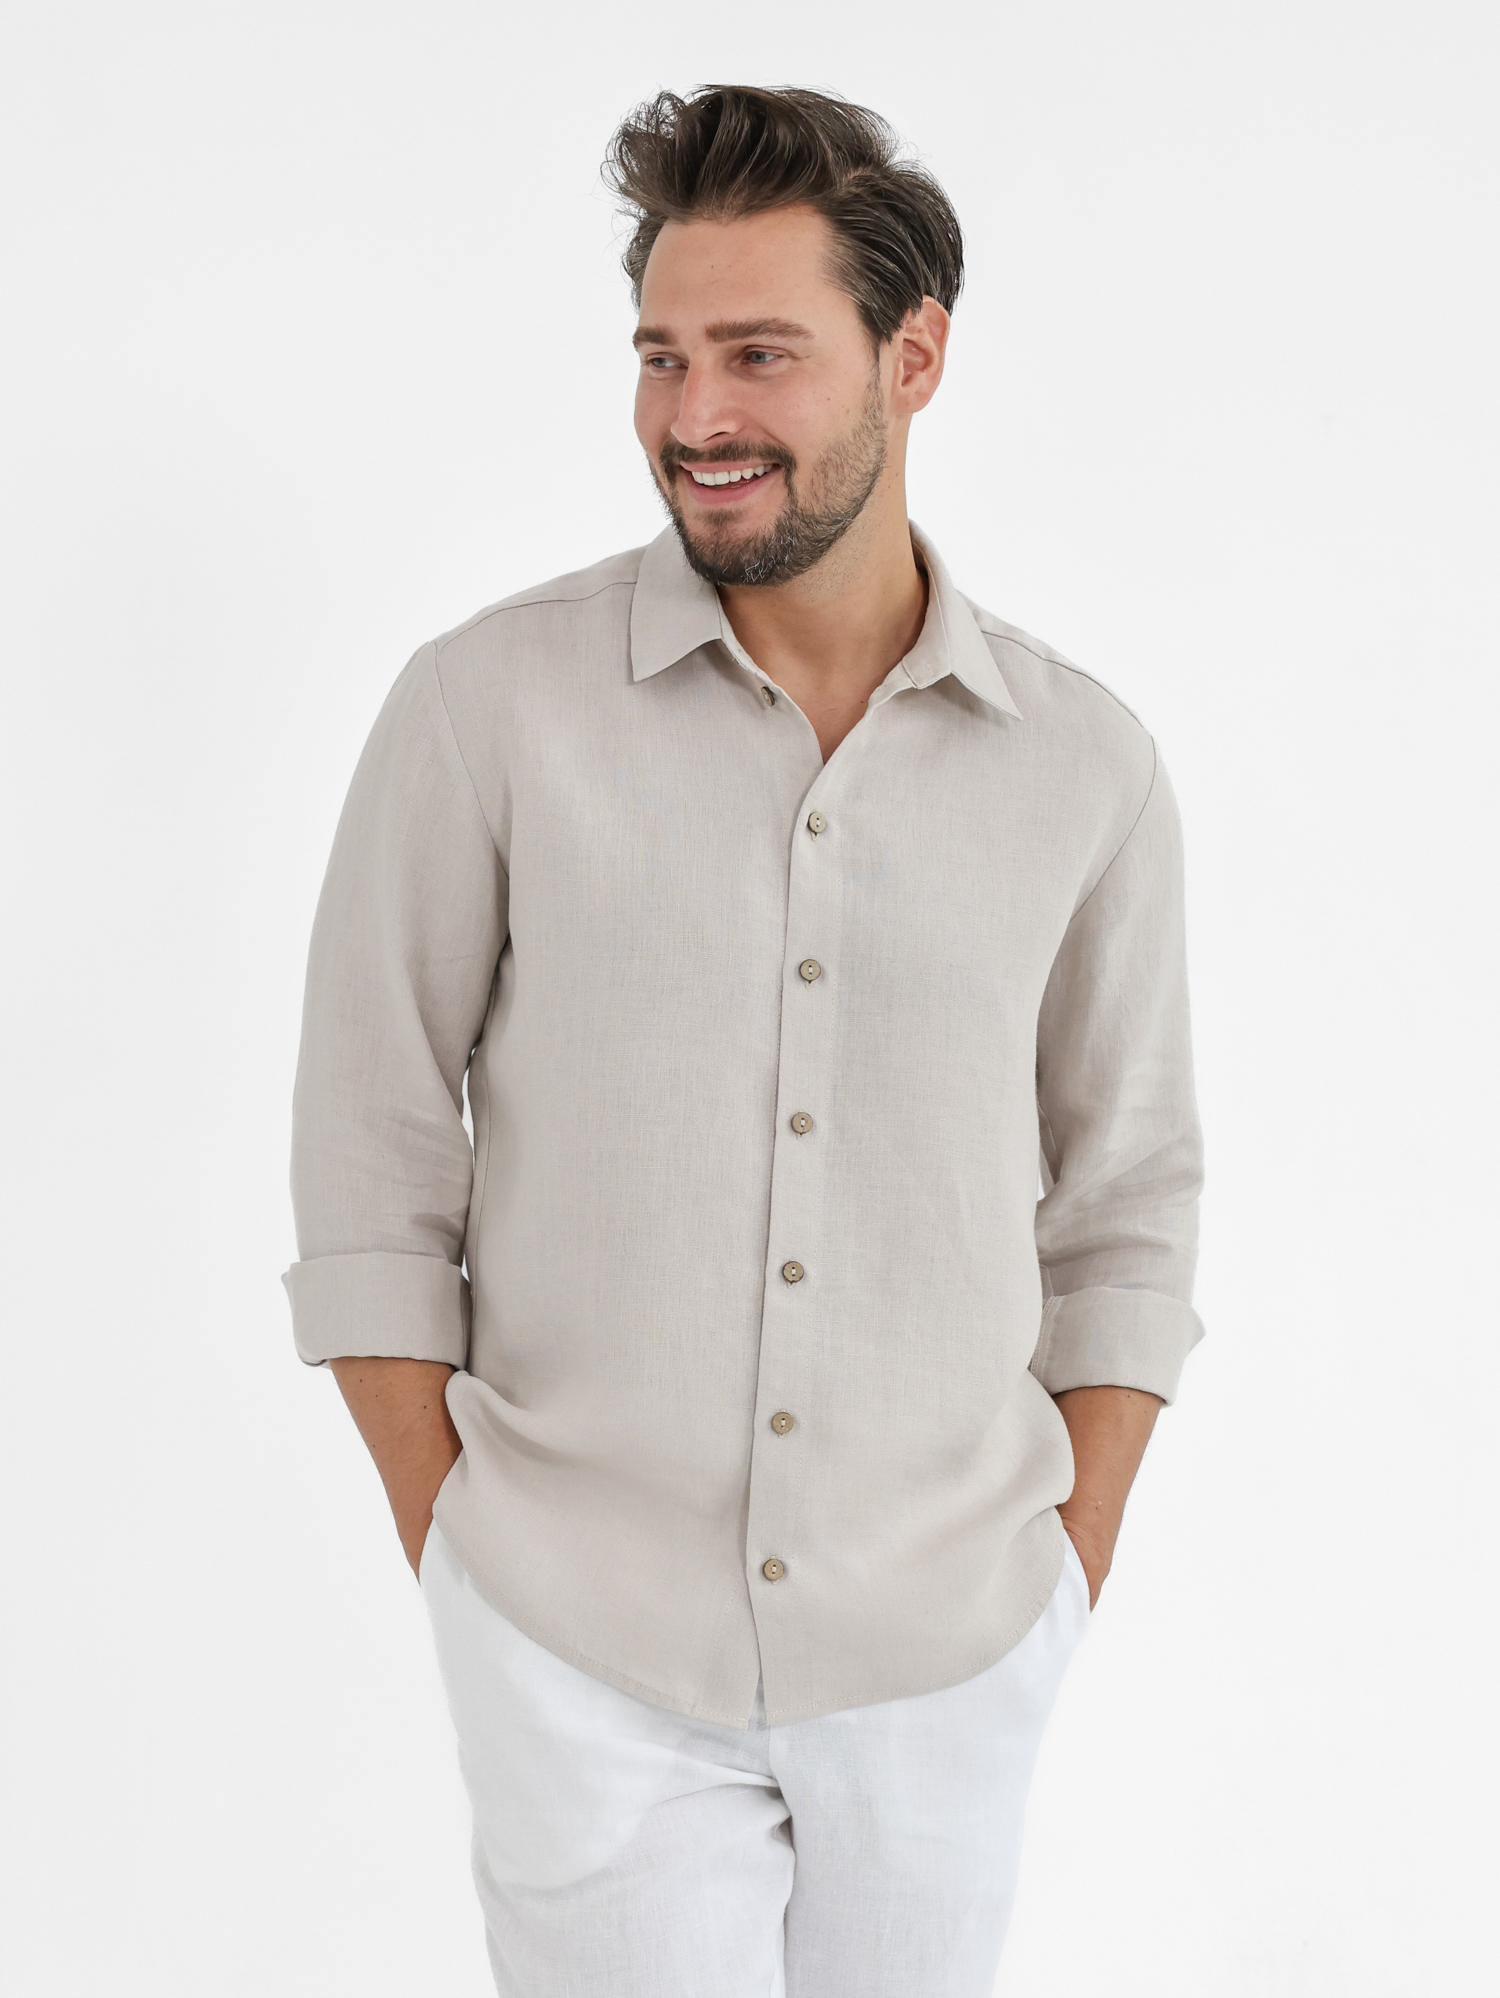 Long sleeve men's linen shirt